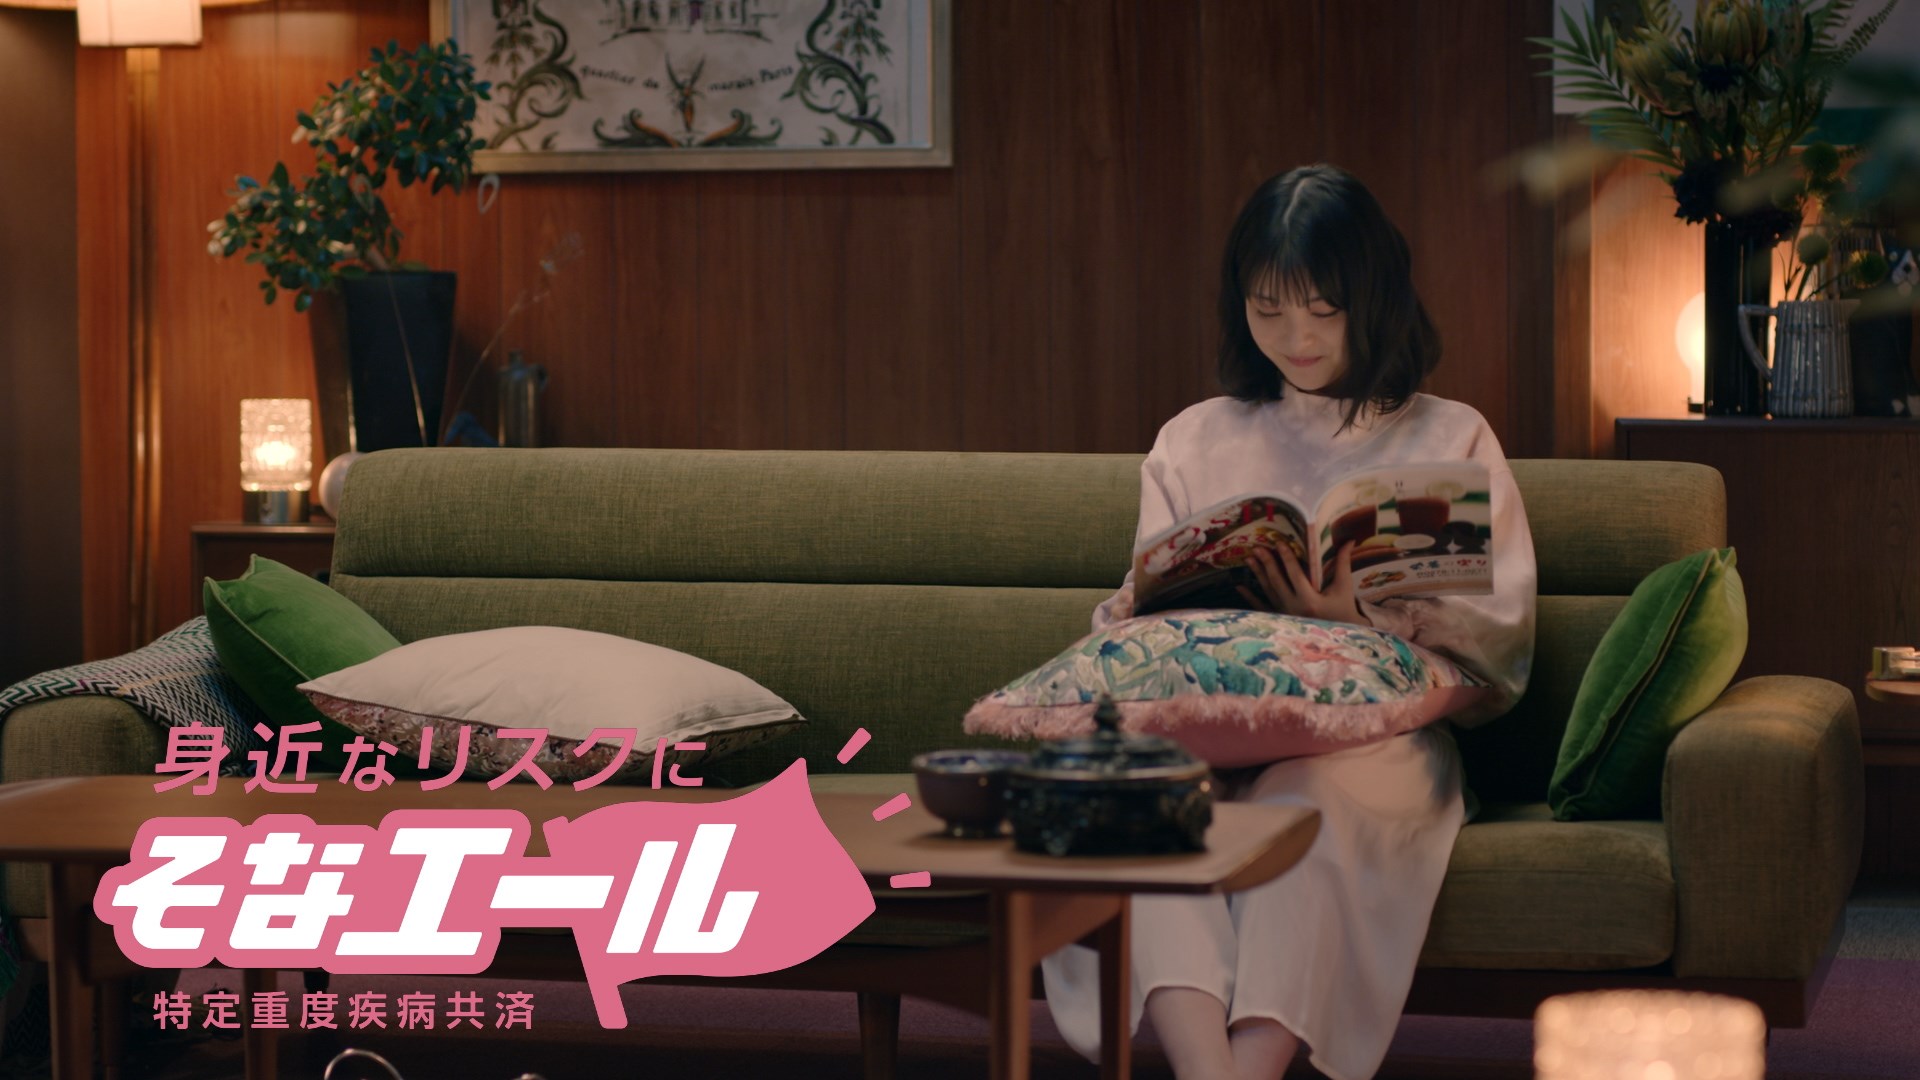 浜辺美波 ／JA共済のWEB動画シリーズ『カスミナミ』第1弾『第二ボタン』篇